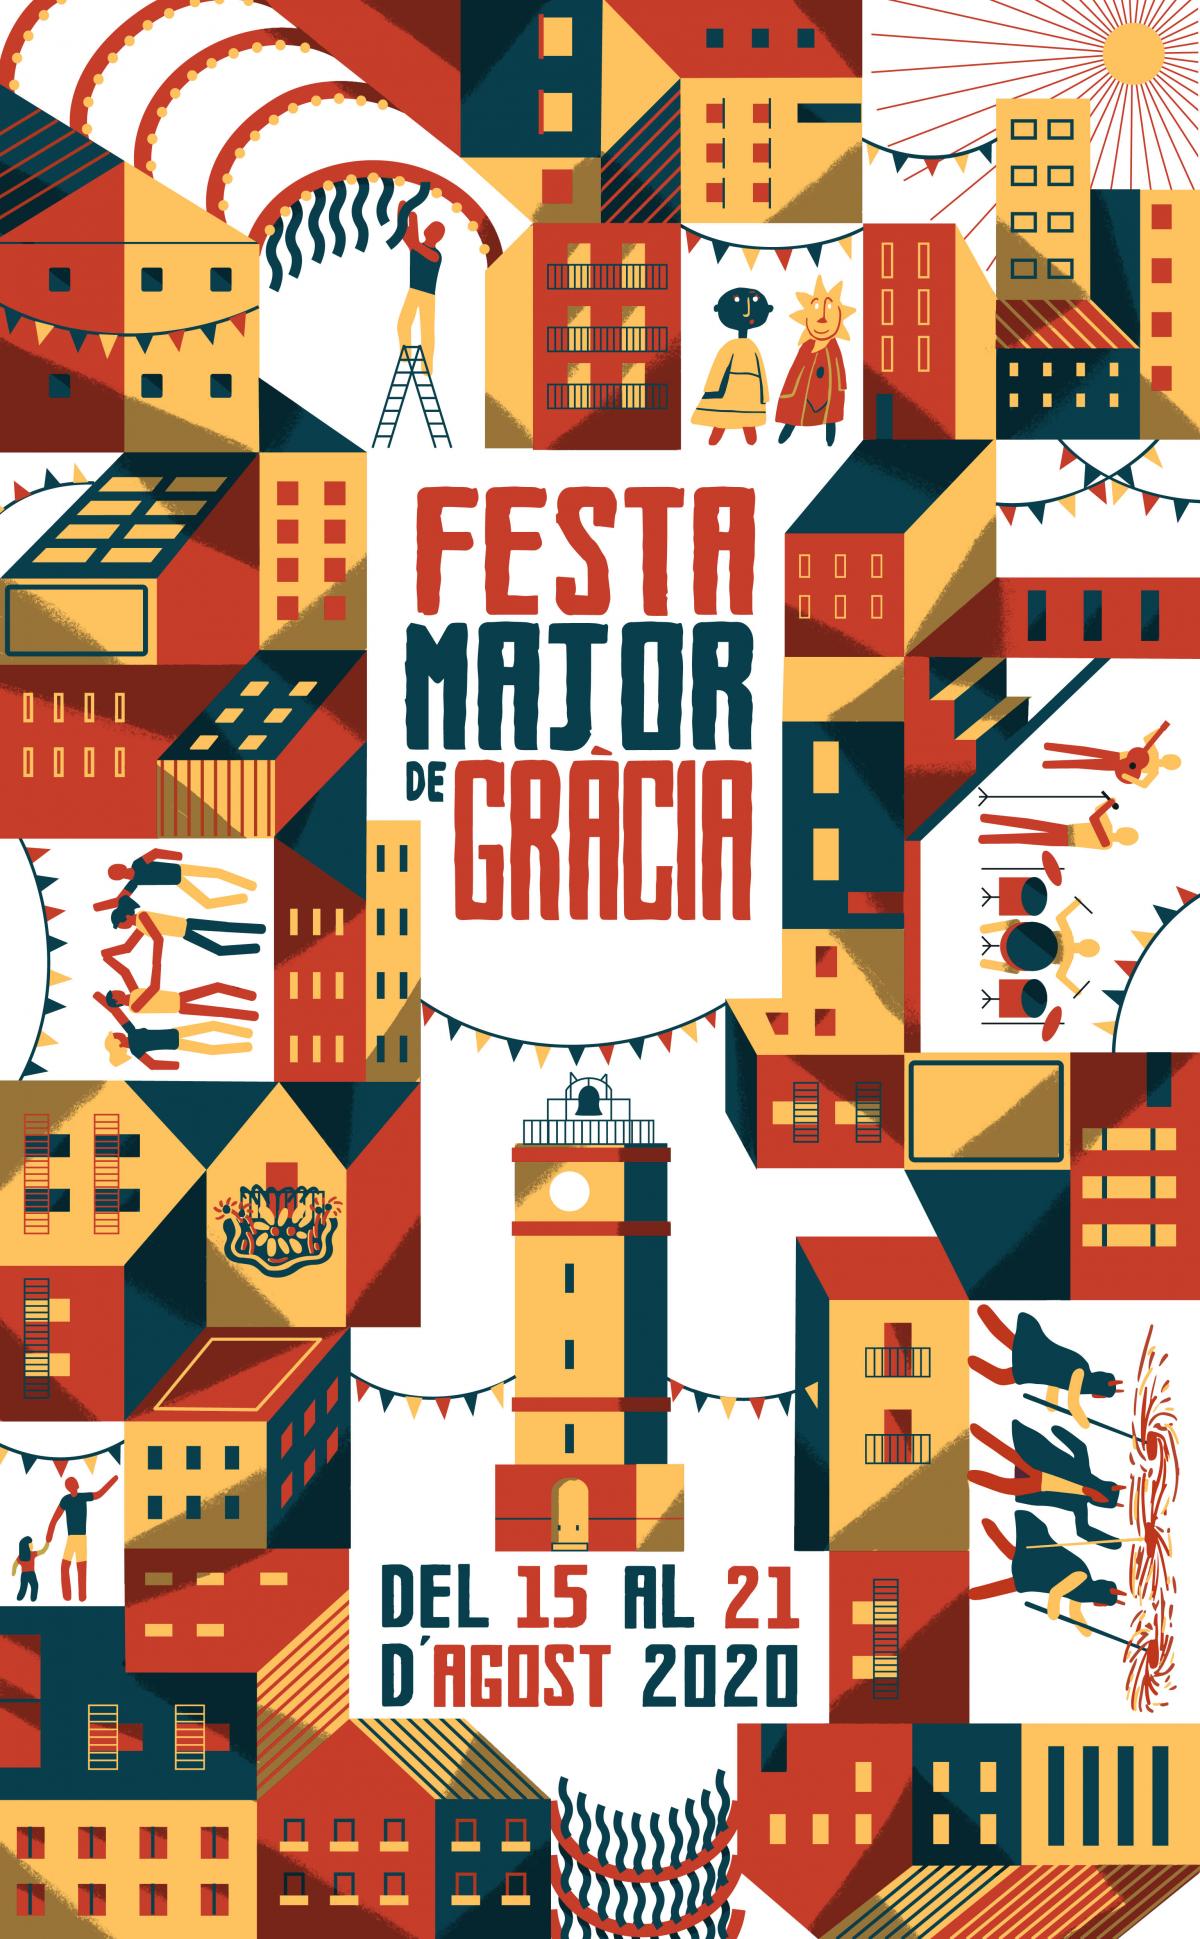 Grcia Festival by Gratis in Barcelona